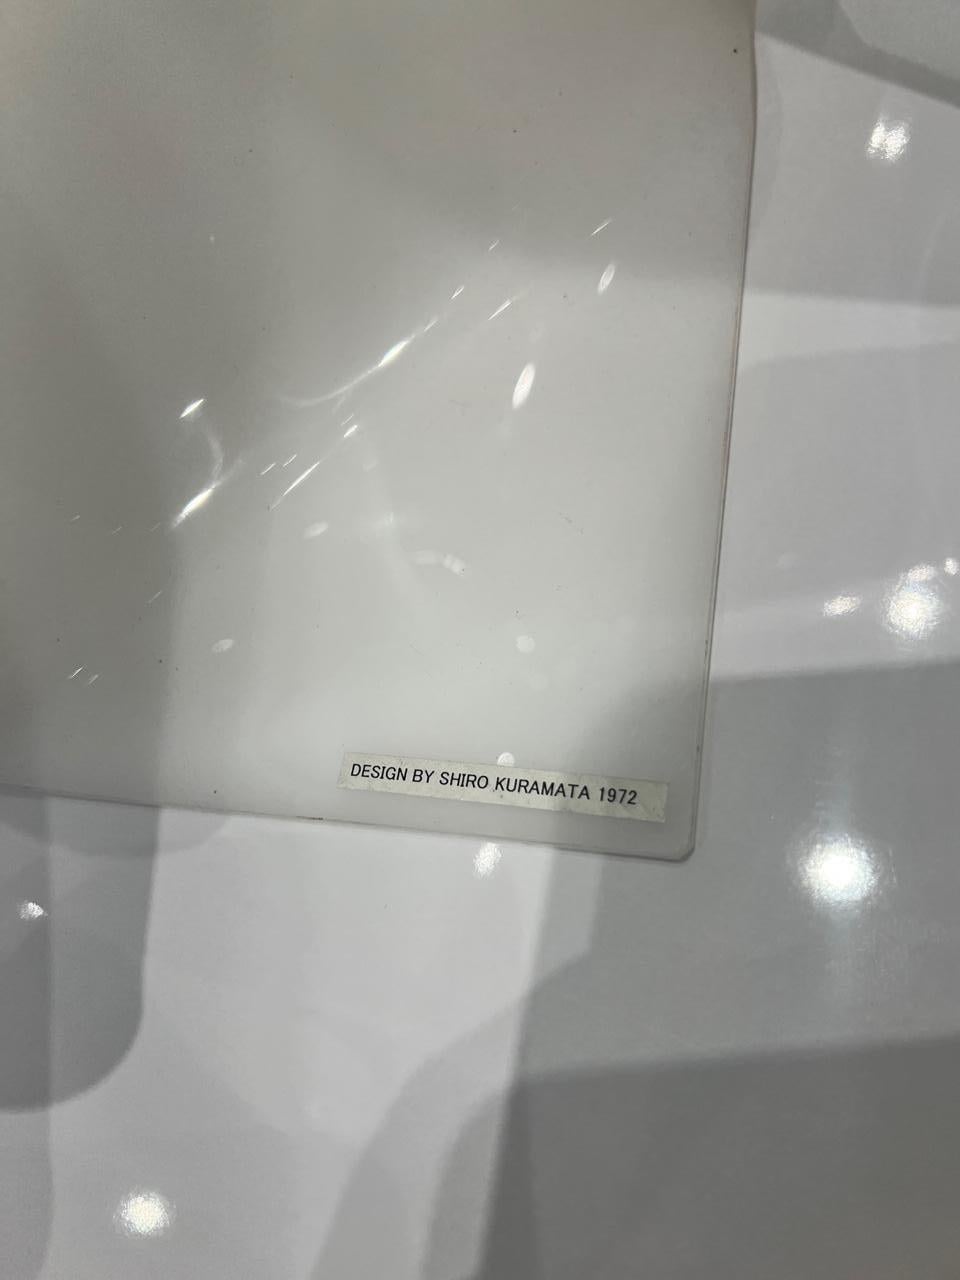 Cette lampe fantôme de Shiro Kuramata. Un nouveau meuble de collection, c'est une grande pièce de conversation. Le design ingénieux ressemble à un tissu blanc flottant ou suspendu dans l'air. L'abat-jour Ghost, en verre acrylique blanc, est posé sur